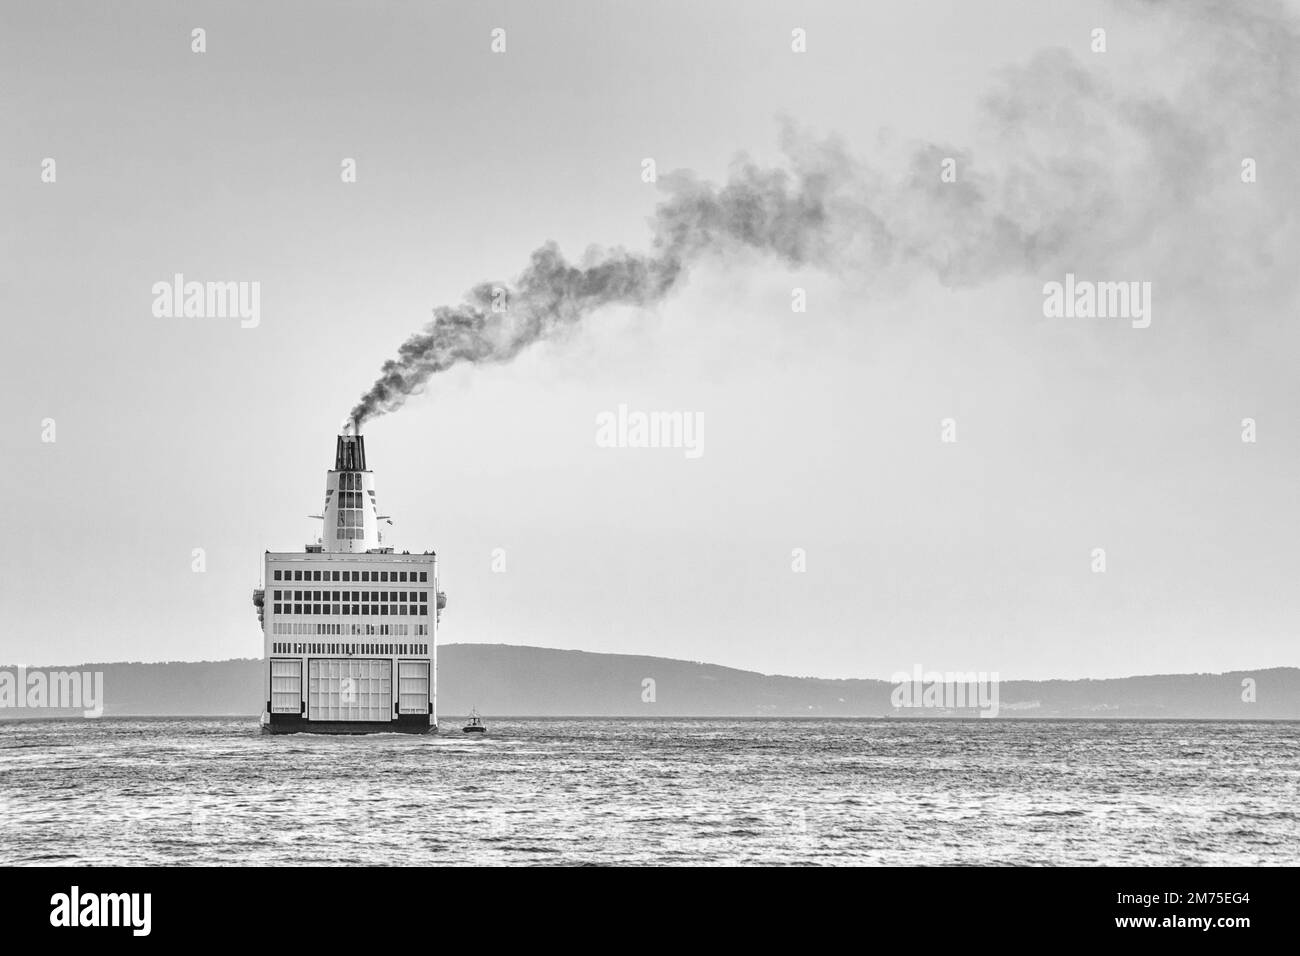 Mare estivo, in bianco e nero - la nave lascia il porto per il mare aperto, porto di Spalato sulla costa adriatica della Croazia Foto Stock